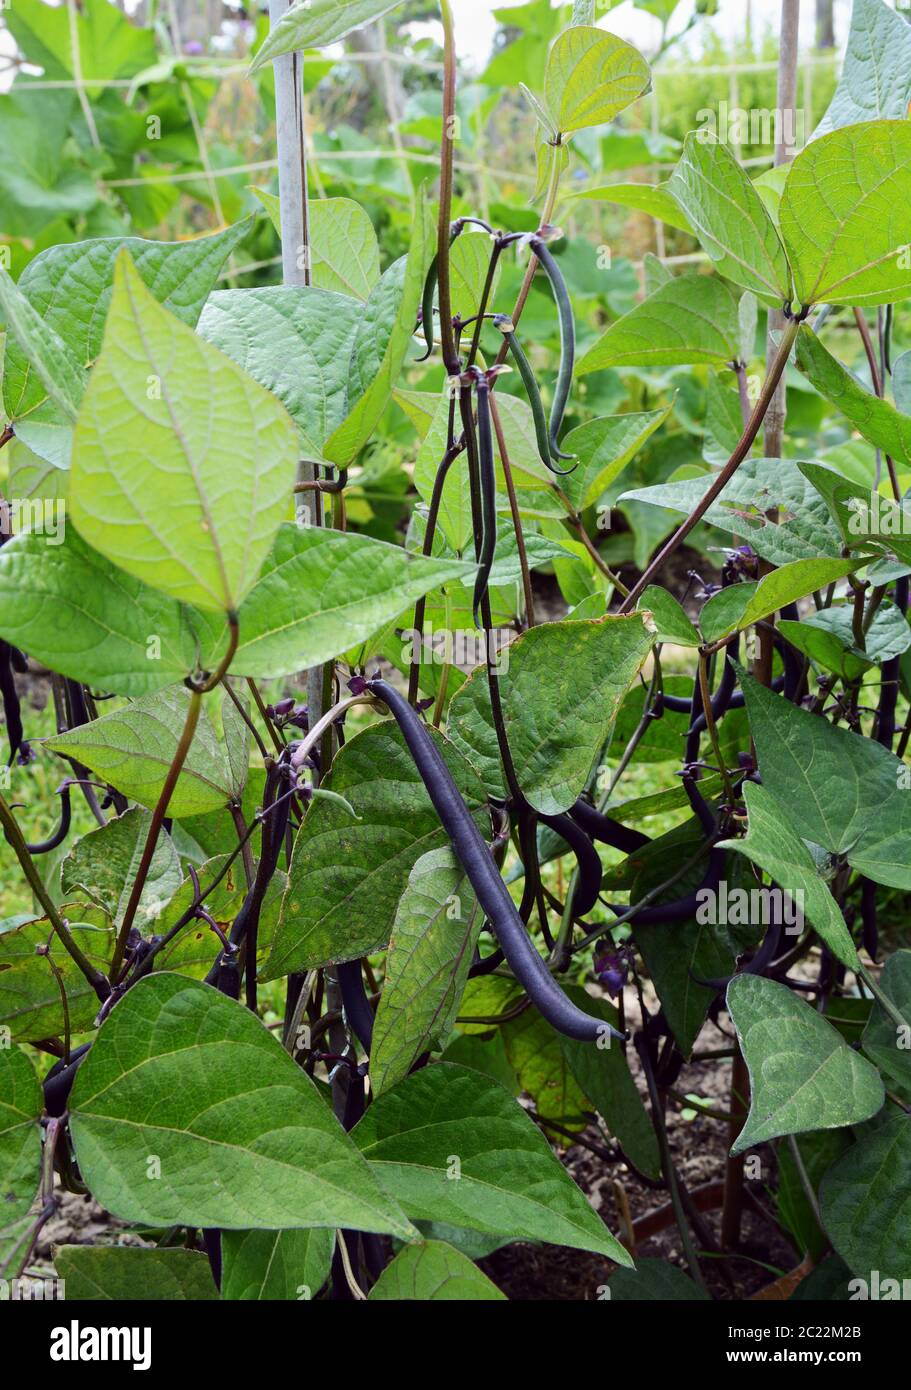 Les Haricots nains avec gousses pourpre sombre touffue poussent sur des plantes vertes dans un allotissement jardin Banque D'Images